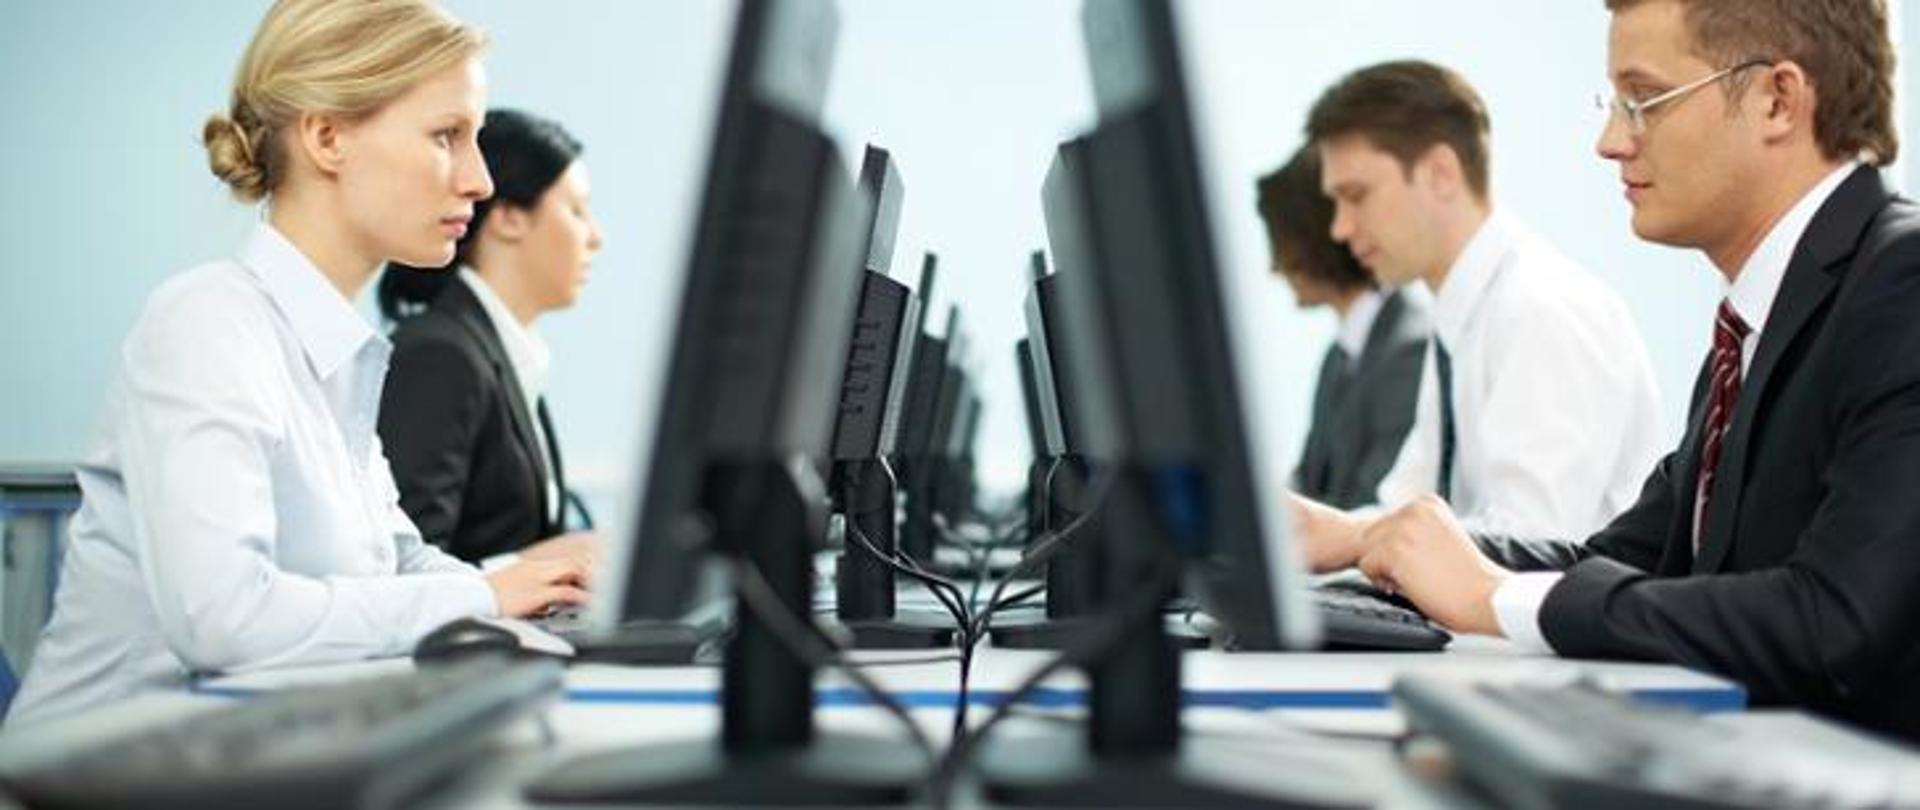 Pięciu pracowników biurowych siedzących naprzeciwko siebie, którzy pracują przed komputerami 